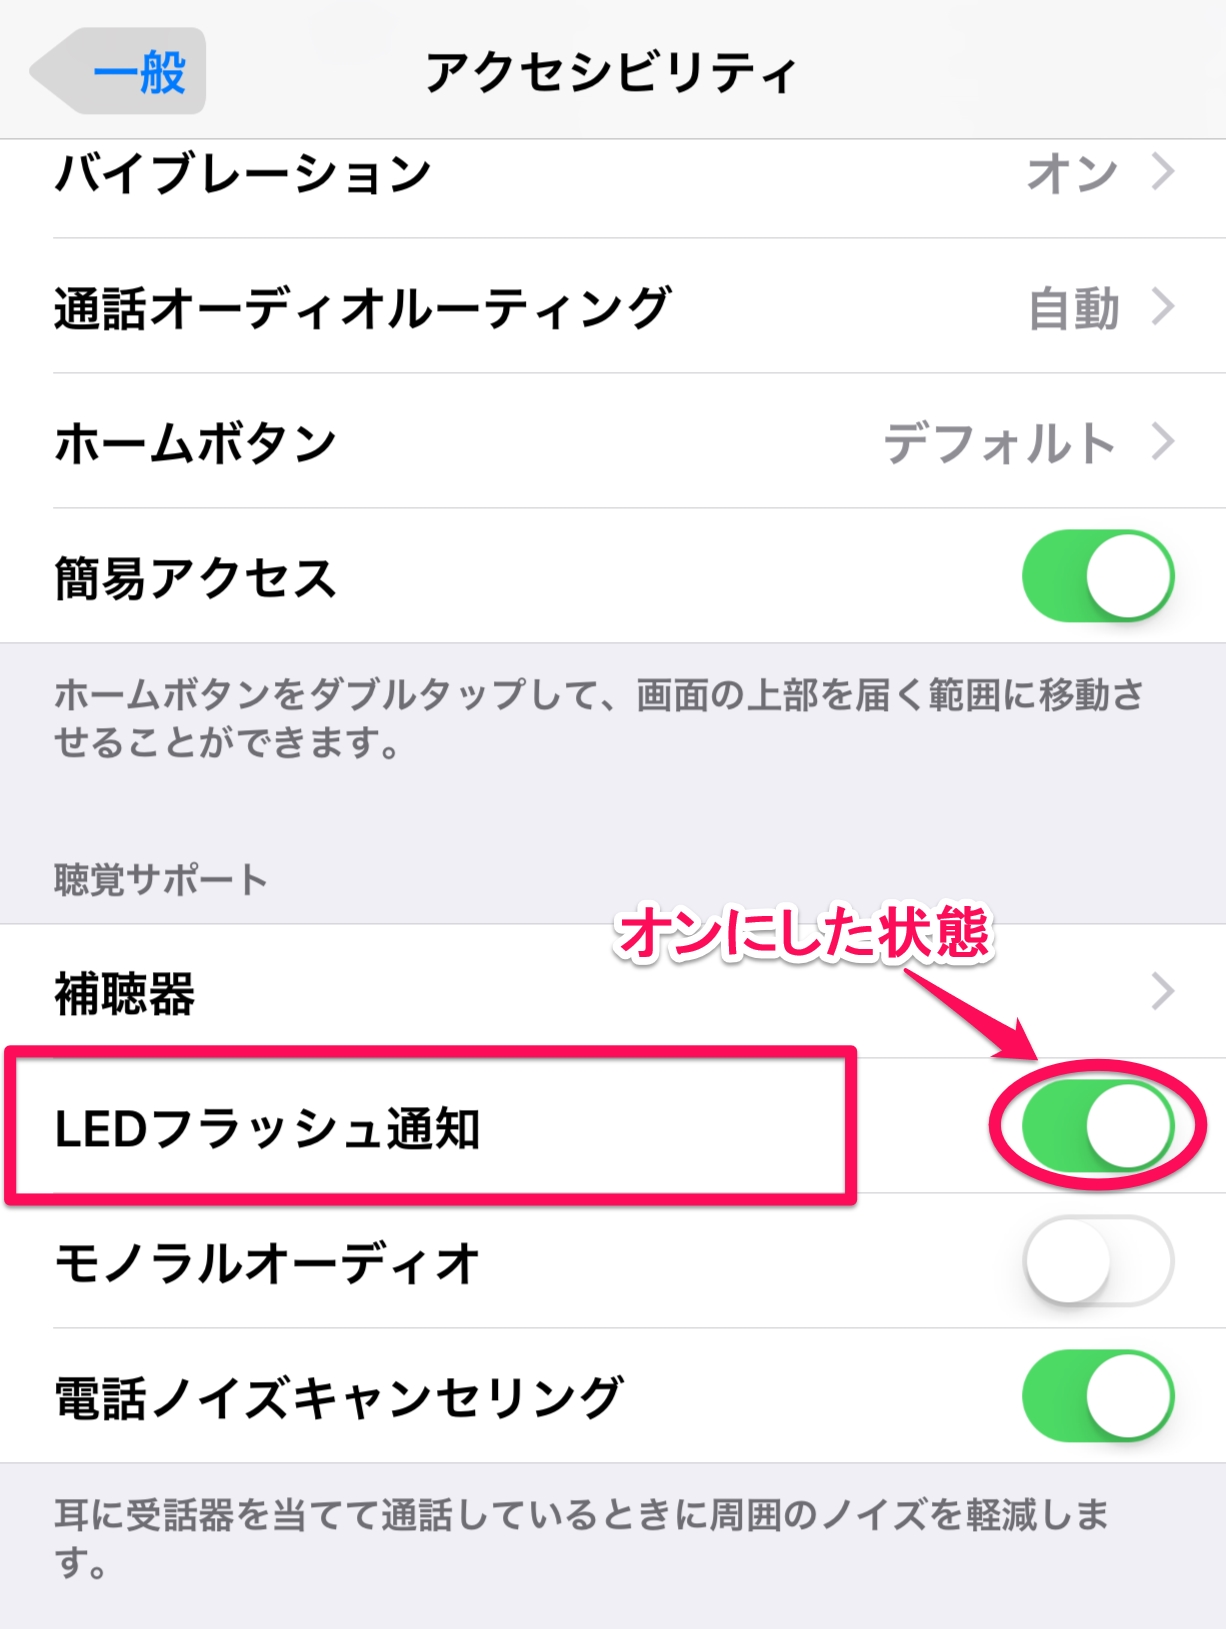 Iphoneの着信をわかりやすくするフラッシュ通知の設定方法 Apple Labo